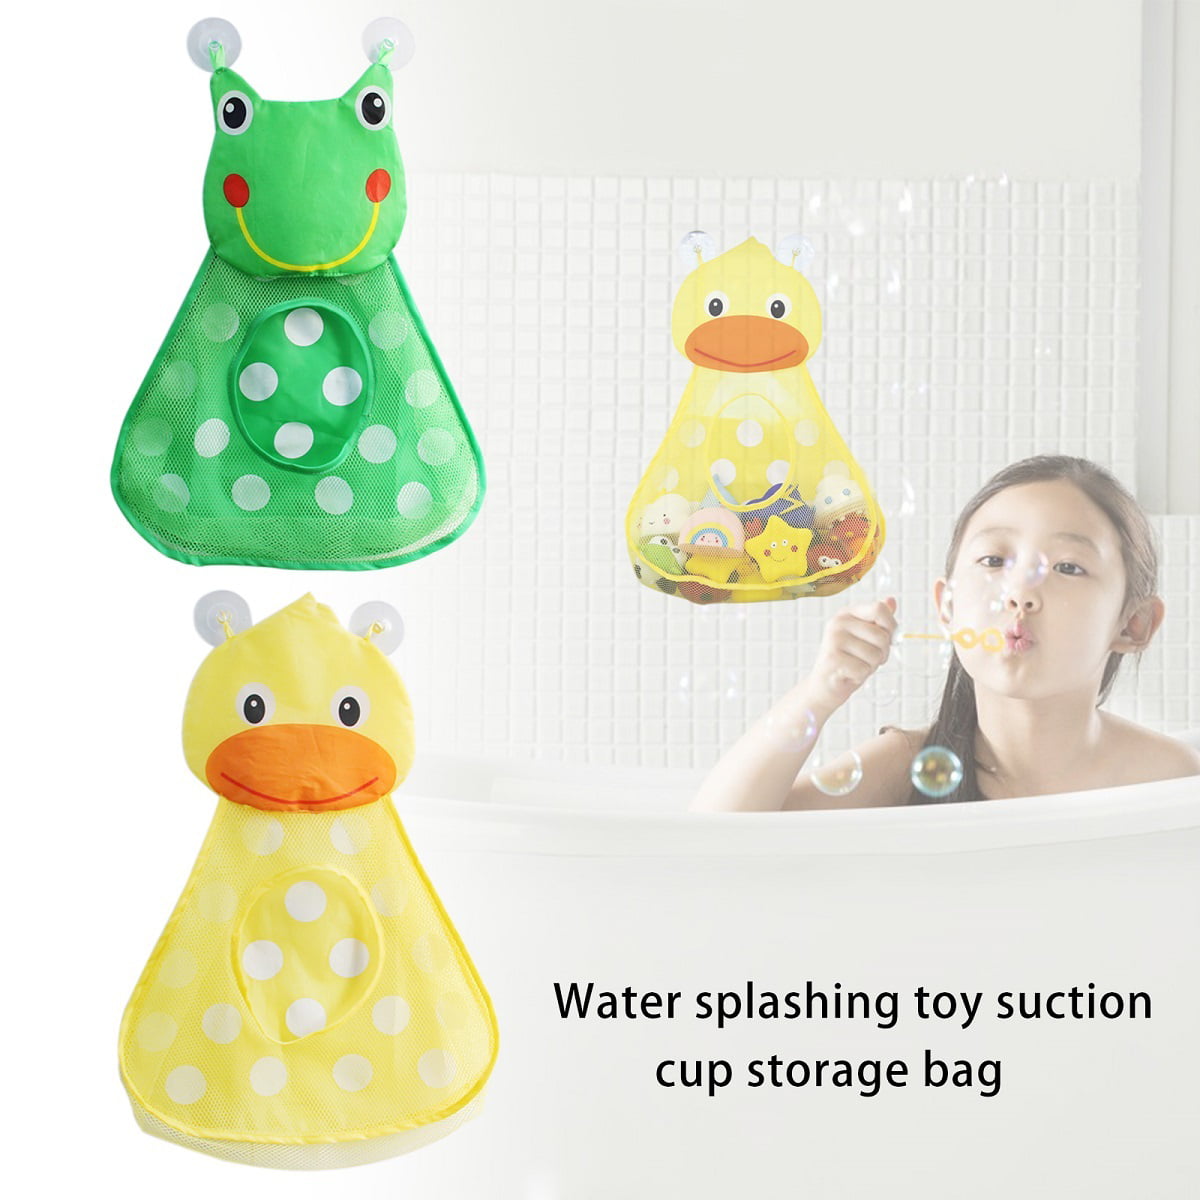 bathtub toy storage net folding bathroom hanging mesh baby bath toy net suction cup storage bag shower toy organizer bags Anewu Bath toy organizer 